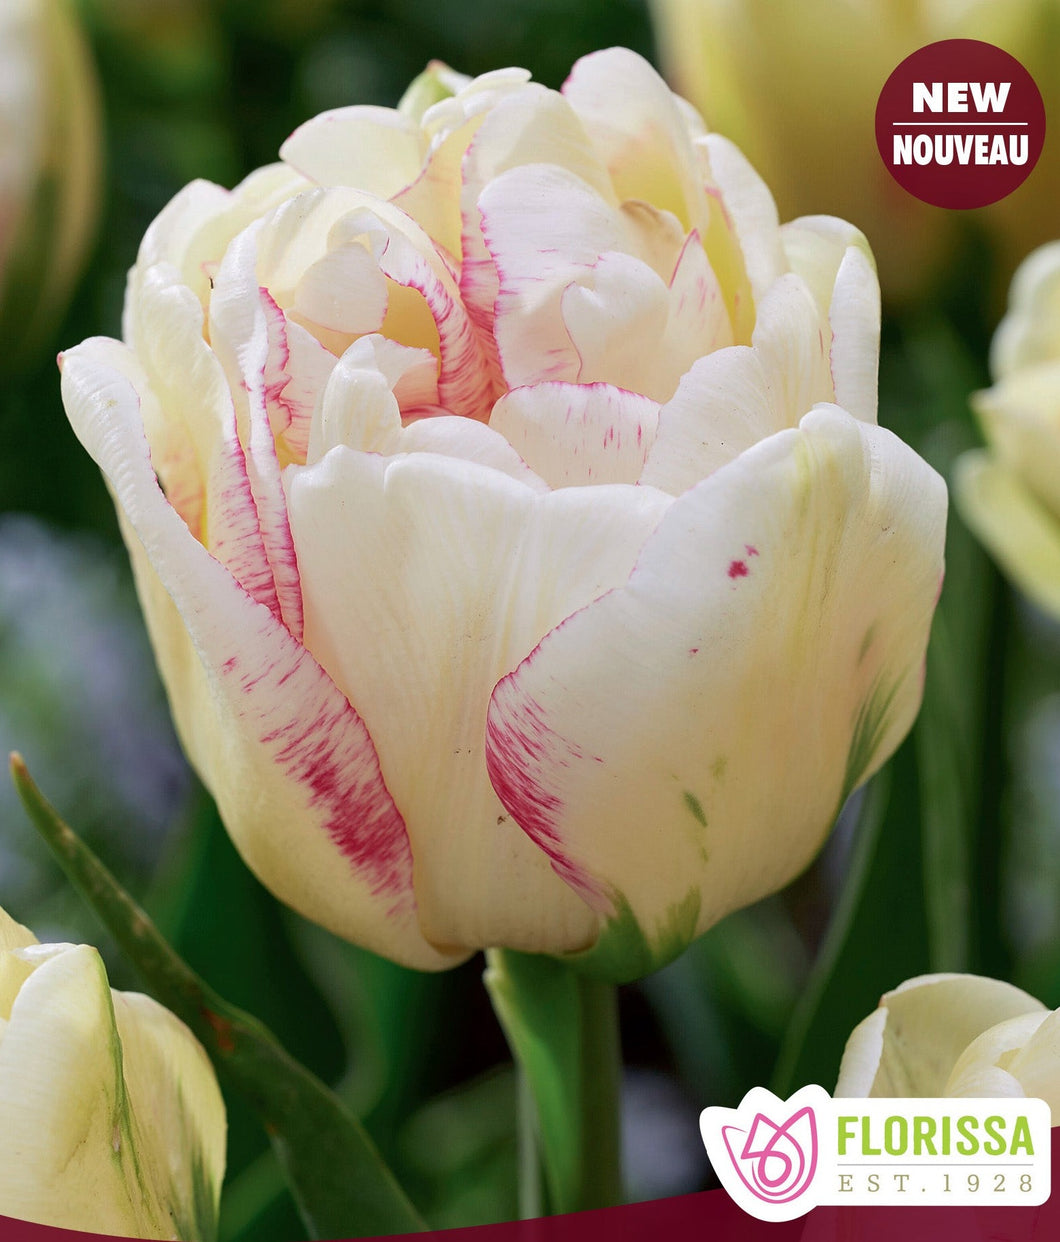 Double Dolce Tulip Bulbs